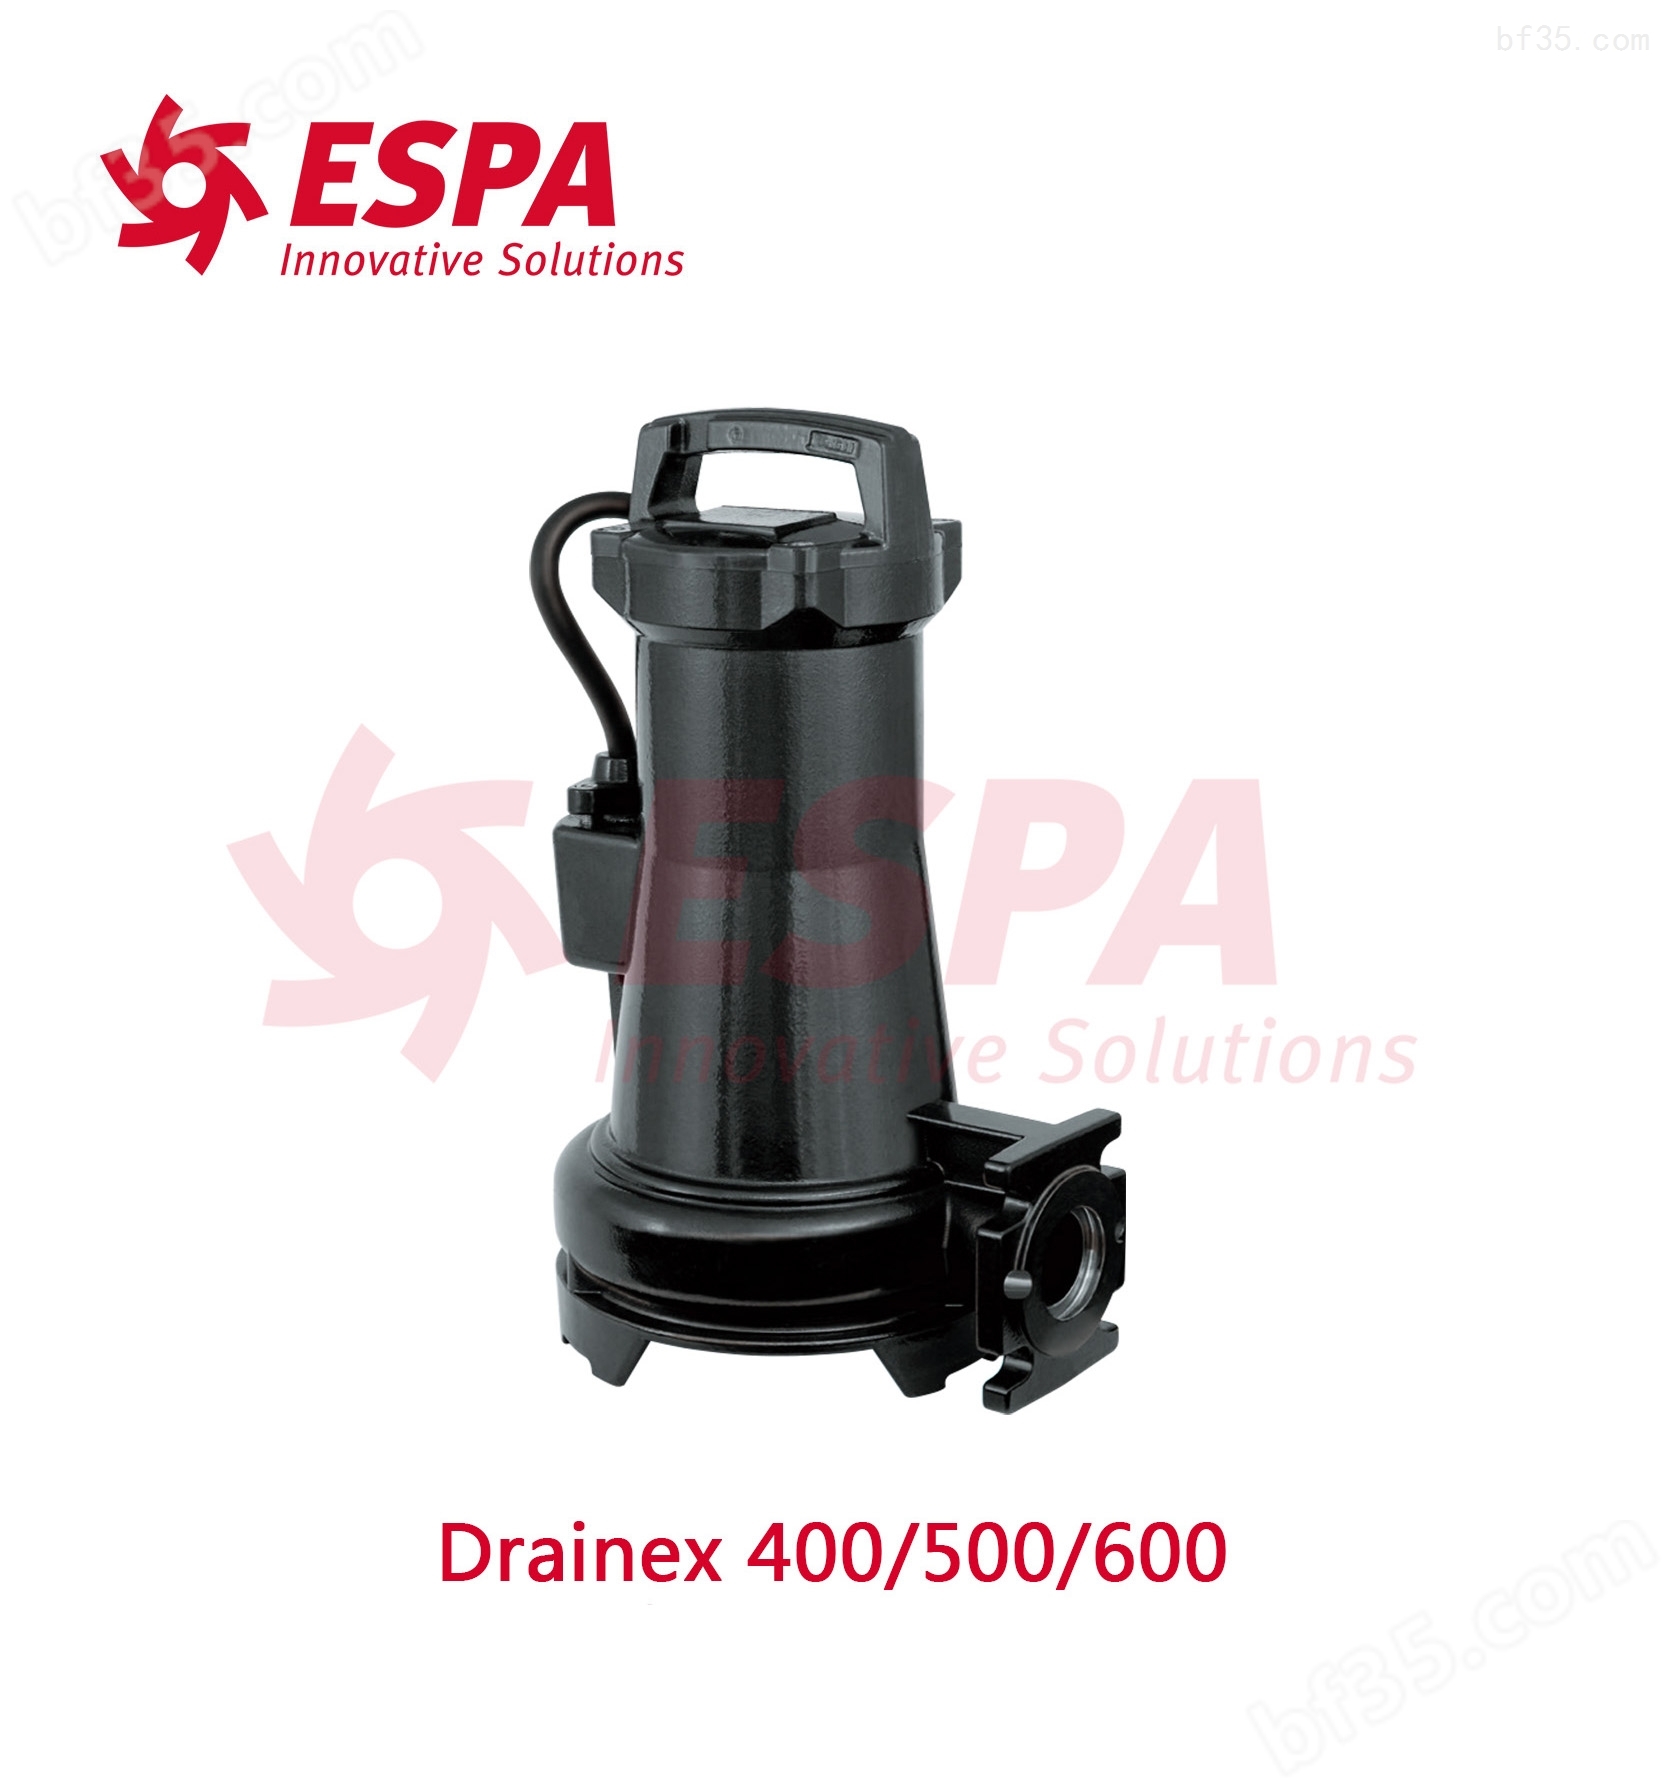 西班牙亚士霸ESPA排污泵Drainex 500/600